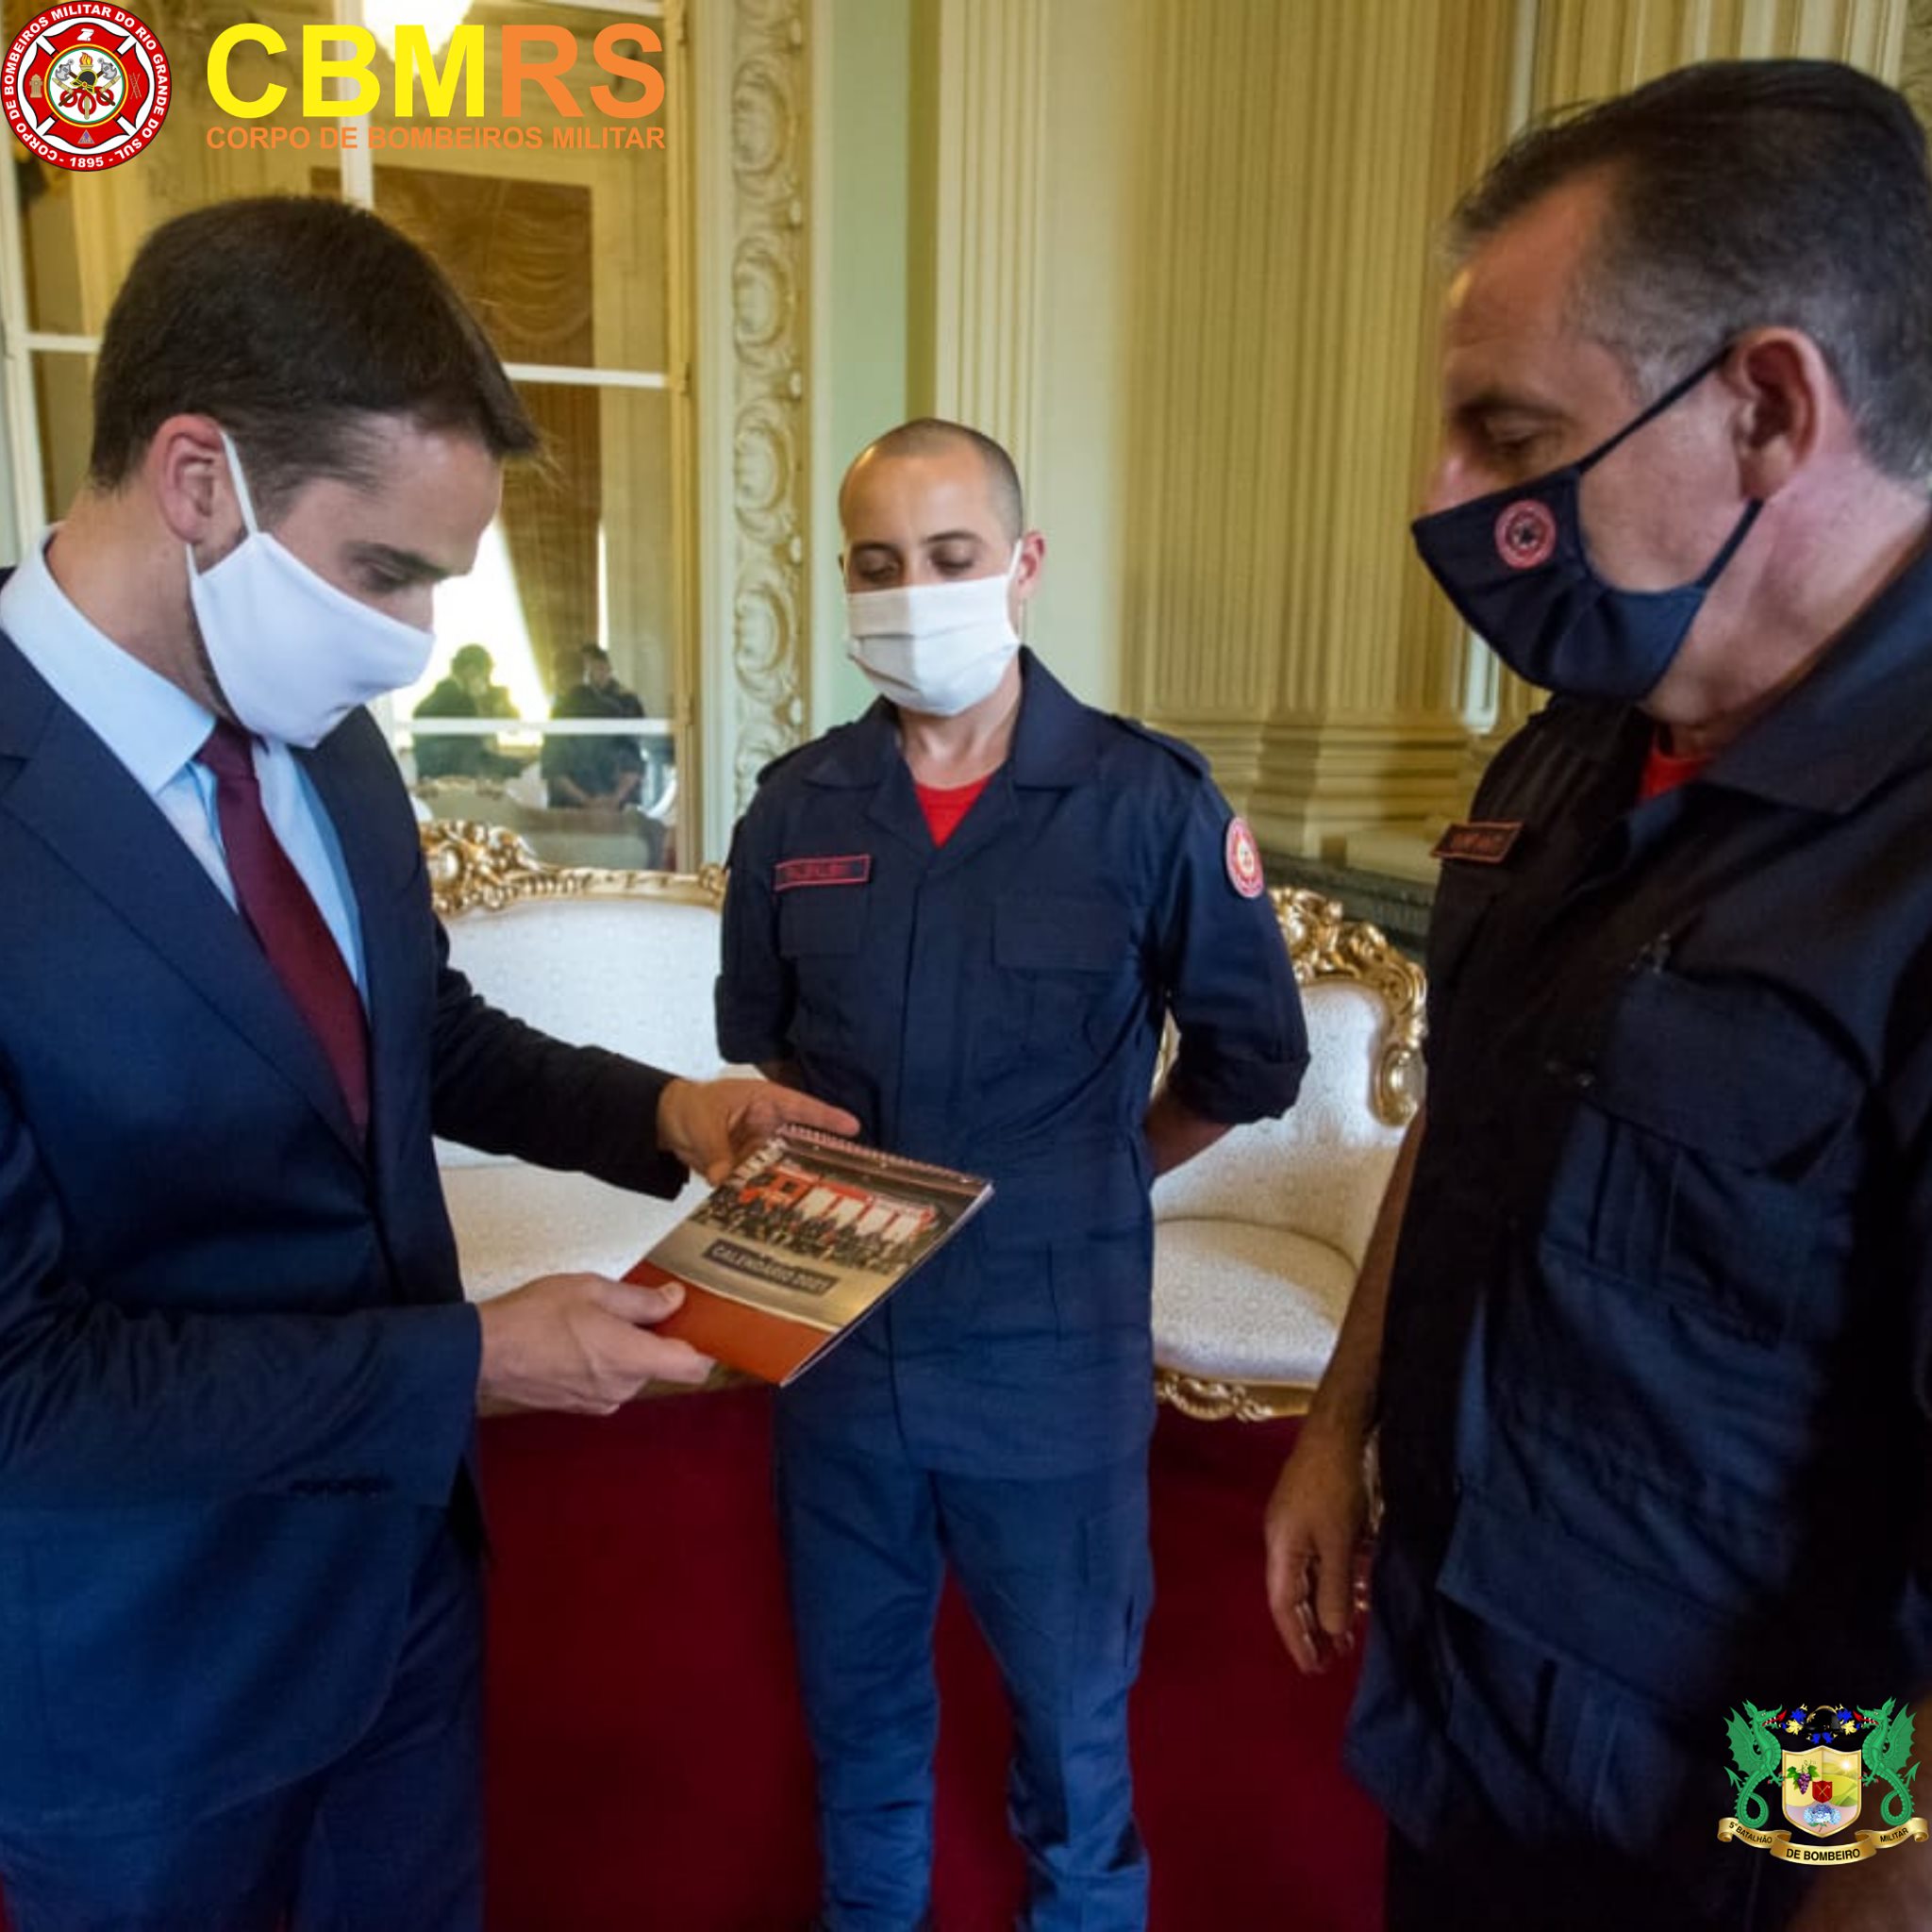 O Corpo de Bombeiros do Estado do Rio Grande do Sul (CBMRS) em visita presenteou o governador e vice com um exemplar do calendário 2021